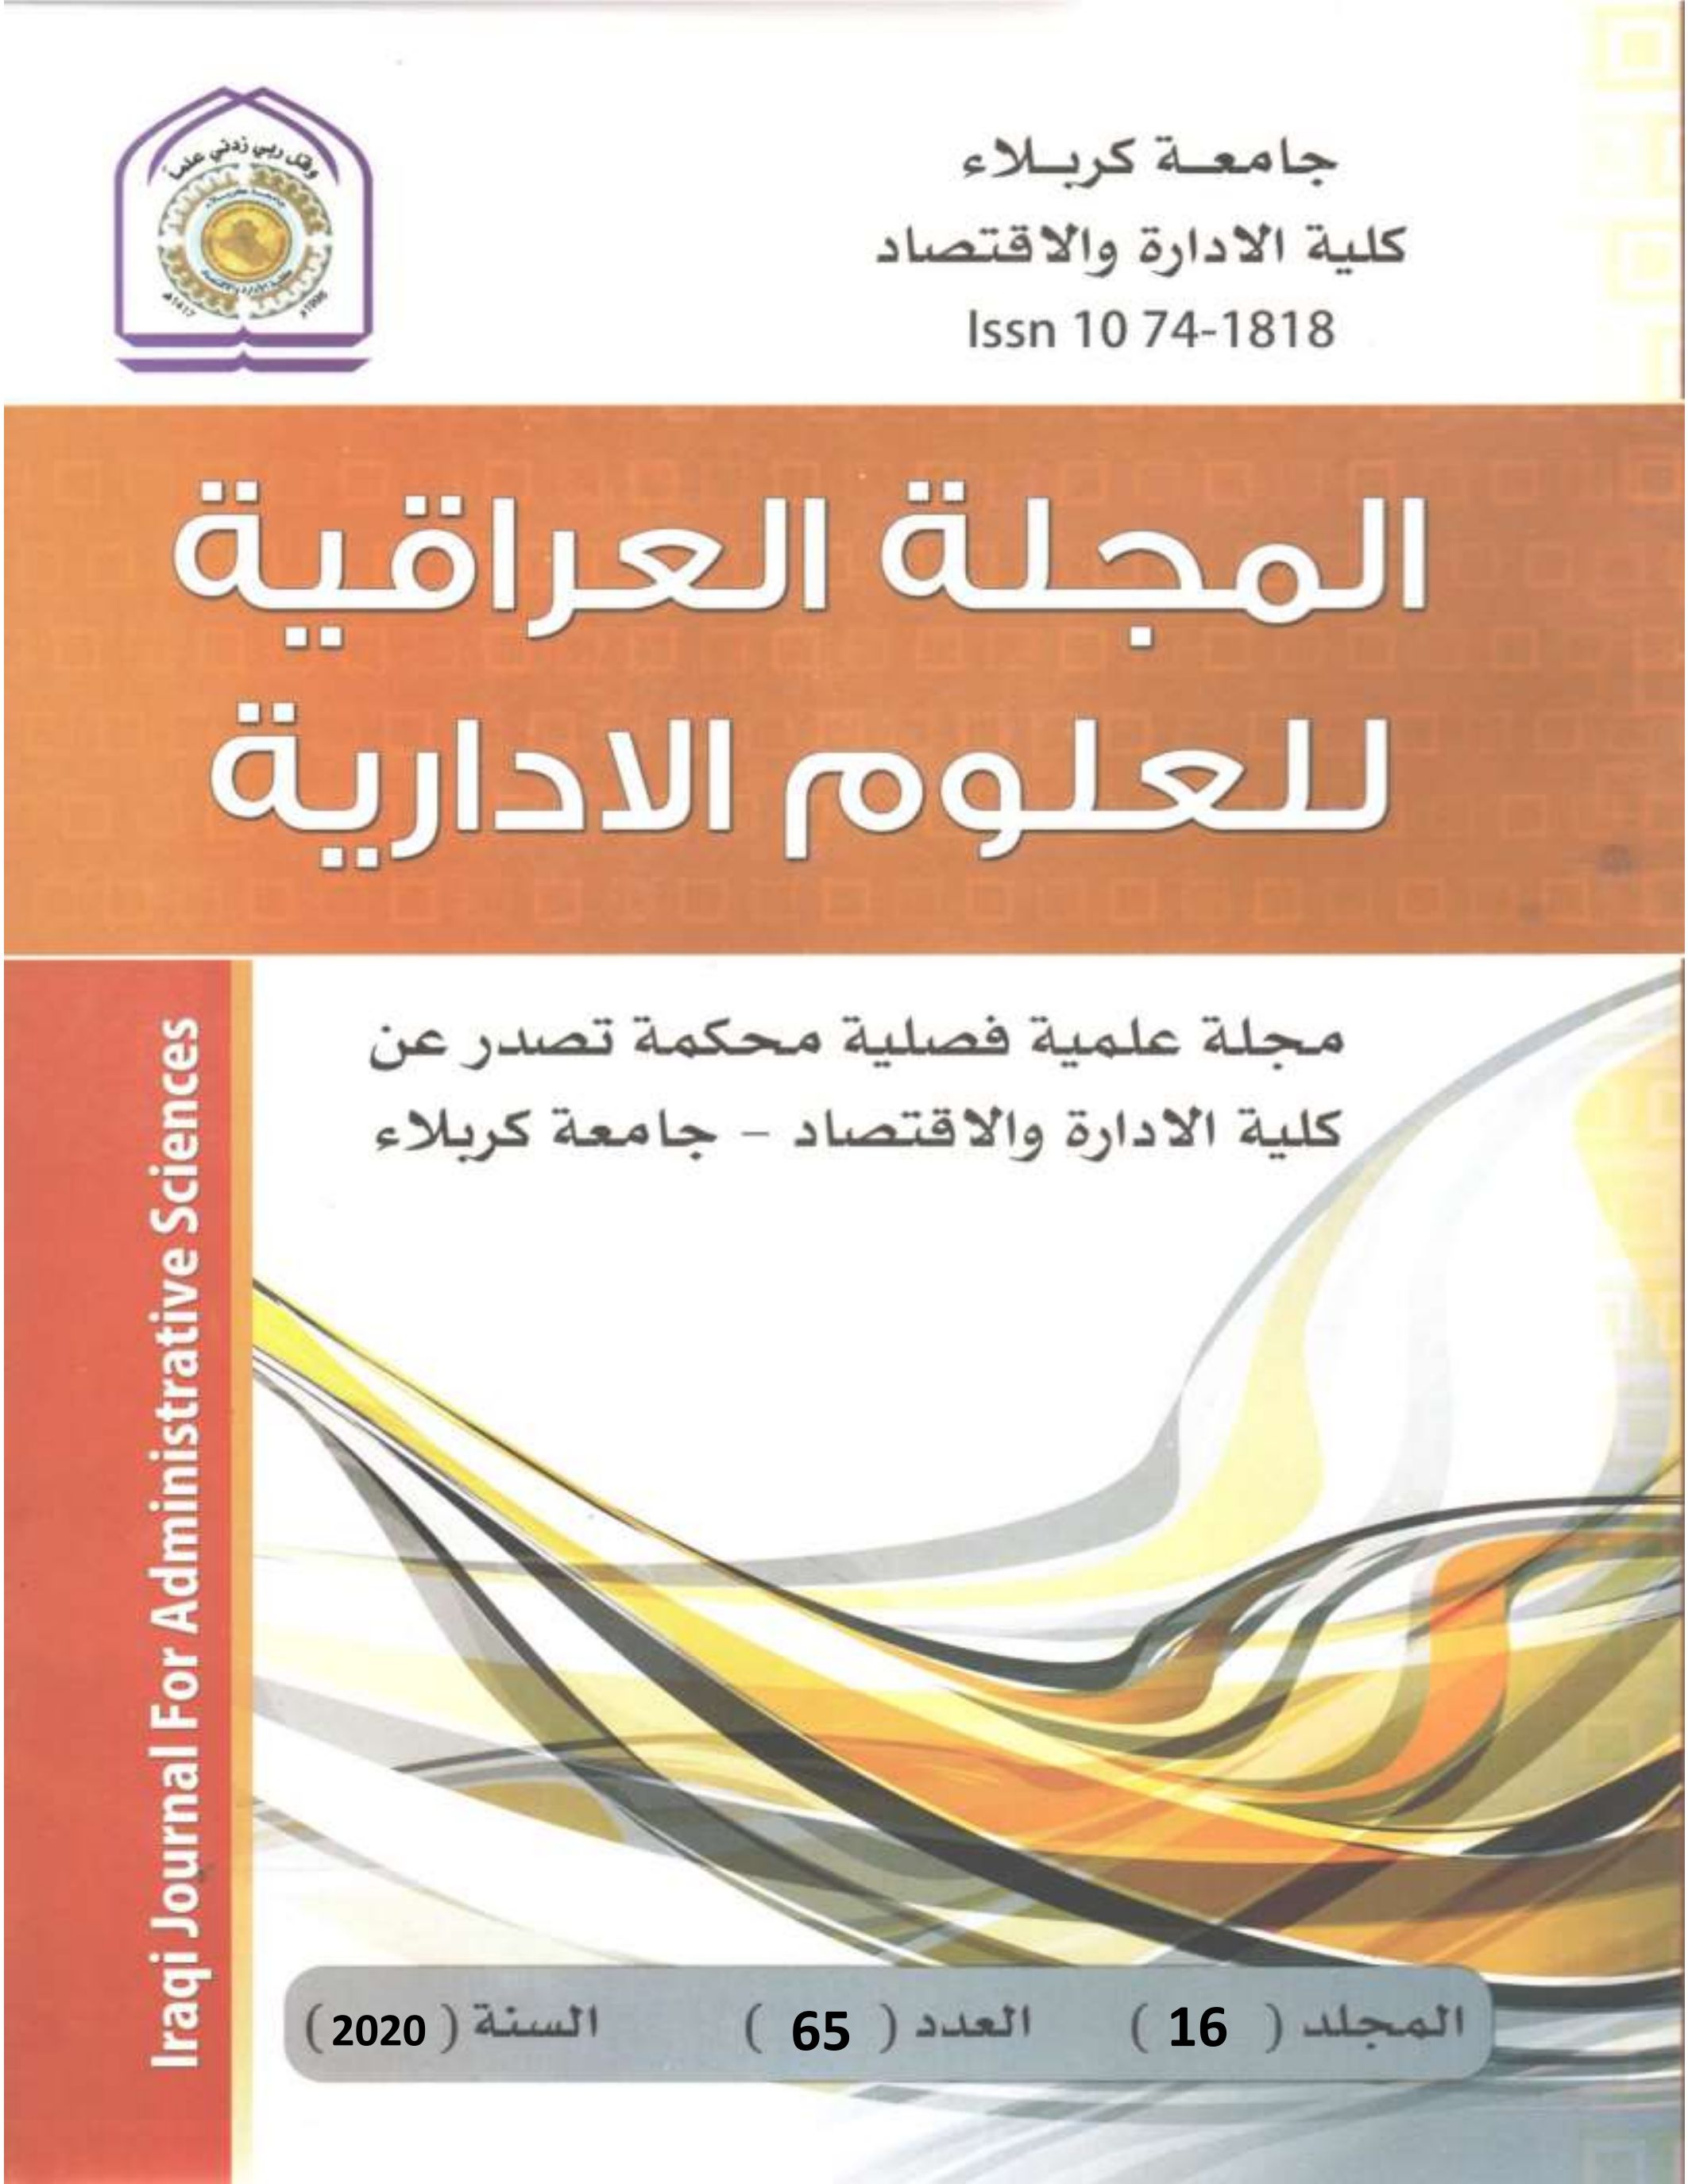 					معاينة مجلد 16 عدد 65 (2020): المجلة العراقية للعلوم الادارية
				